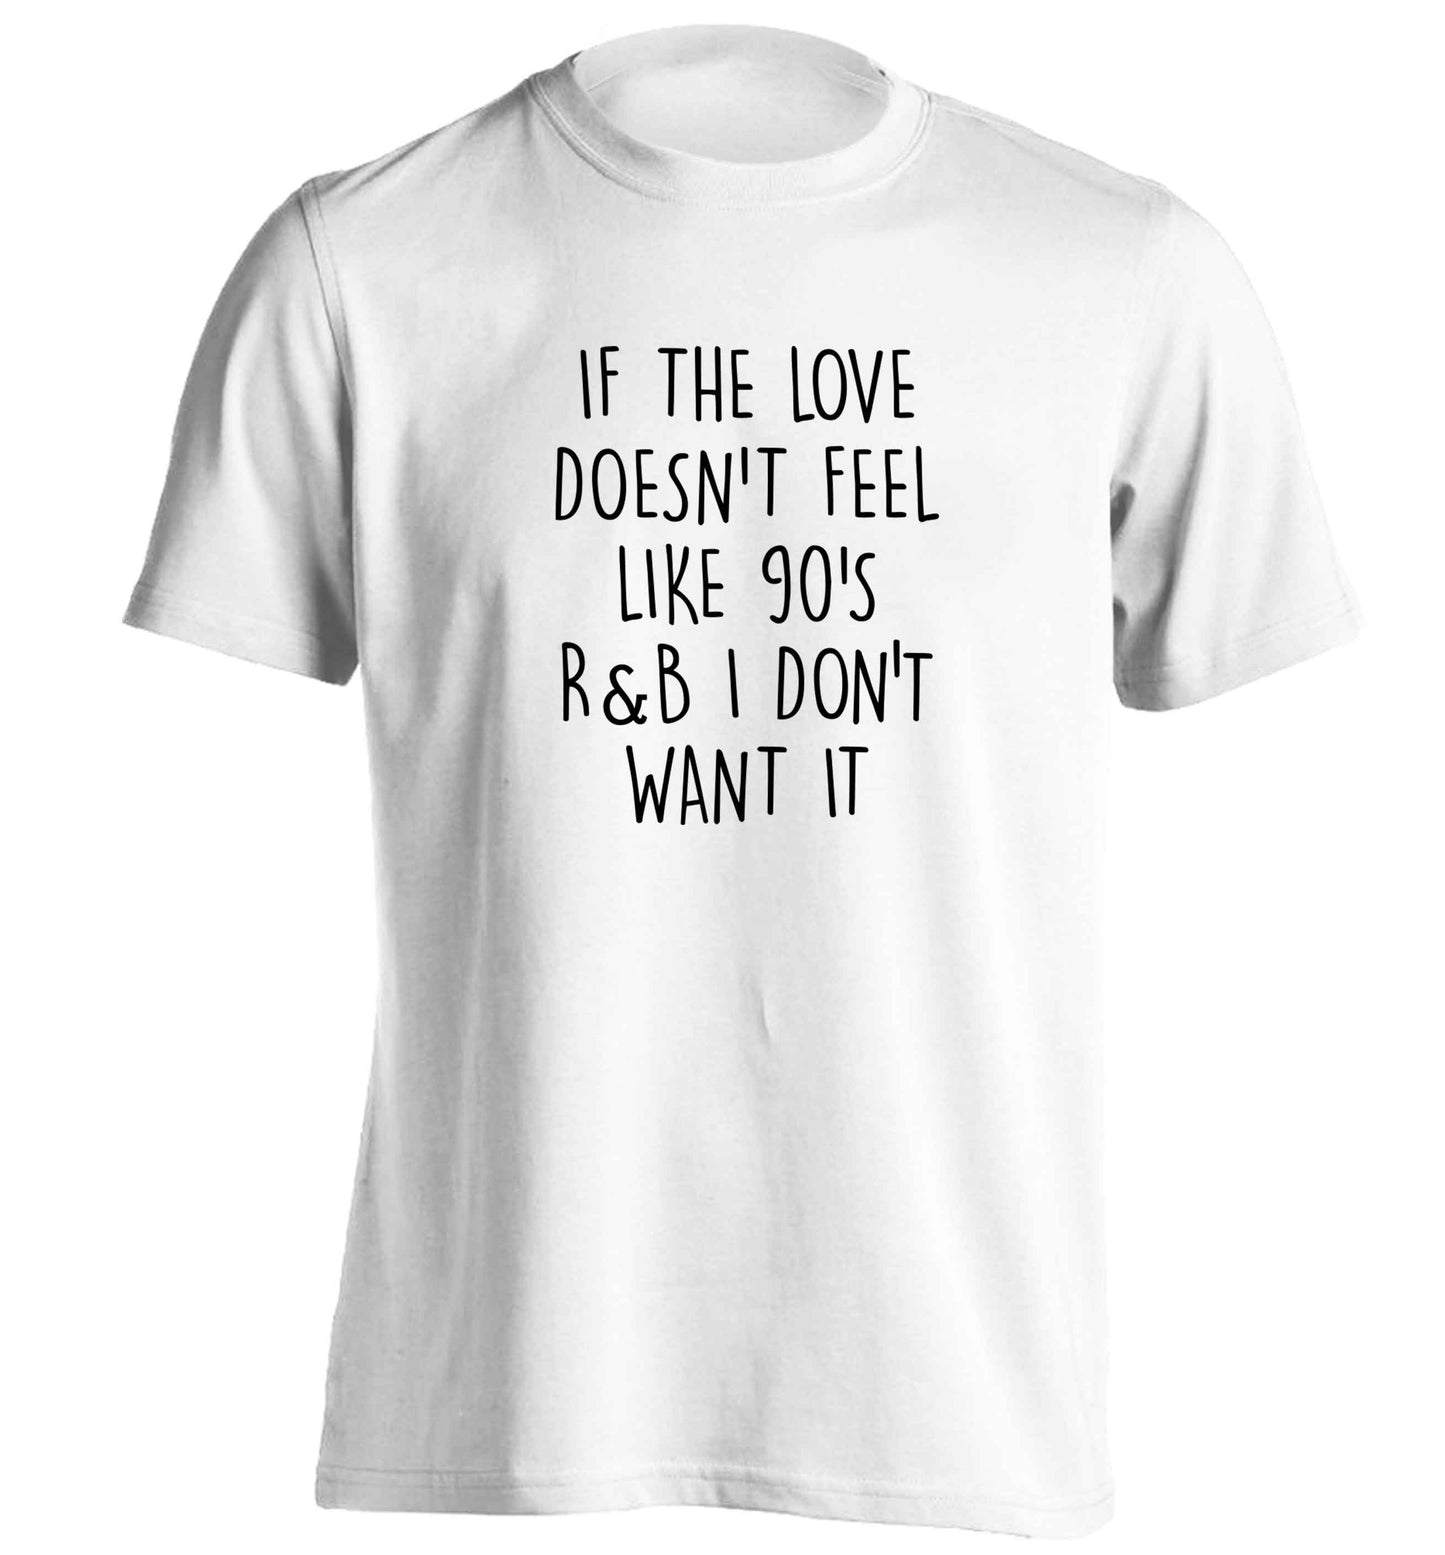 If the love doesn't feel like 90's r&b I don't want it adults unisex white Tshirt 2XL